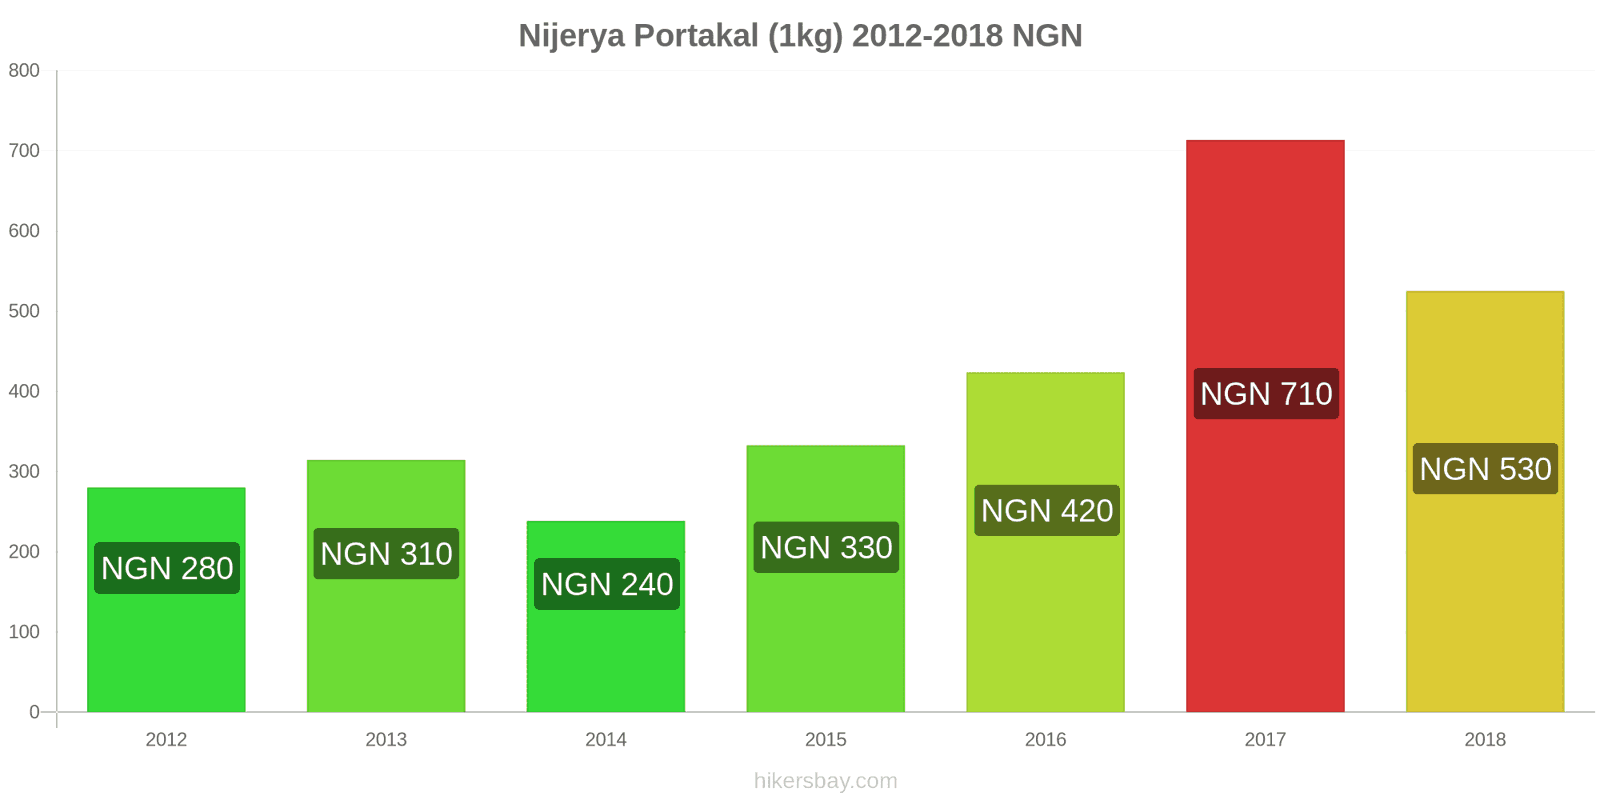 Nijerya fiyat değişiklikleri Portakal (1kg) hikersbay.com